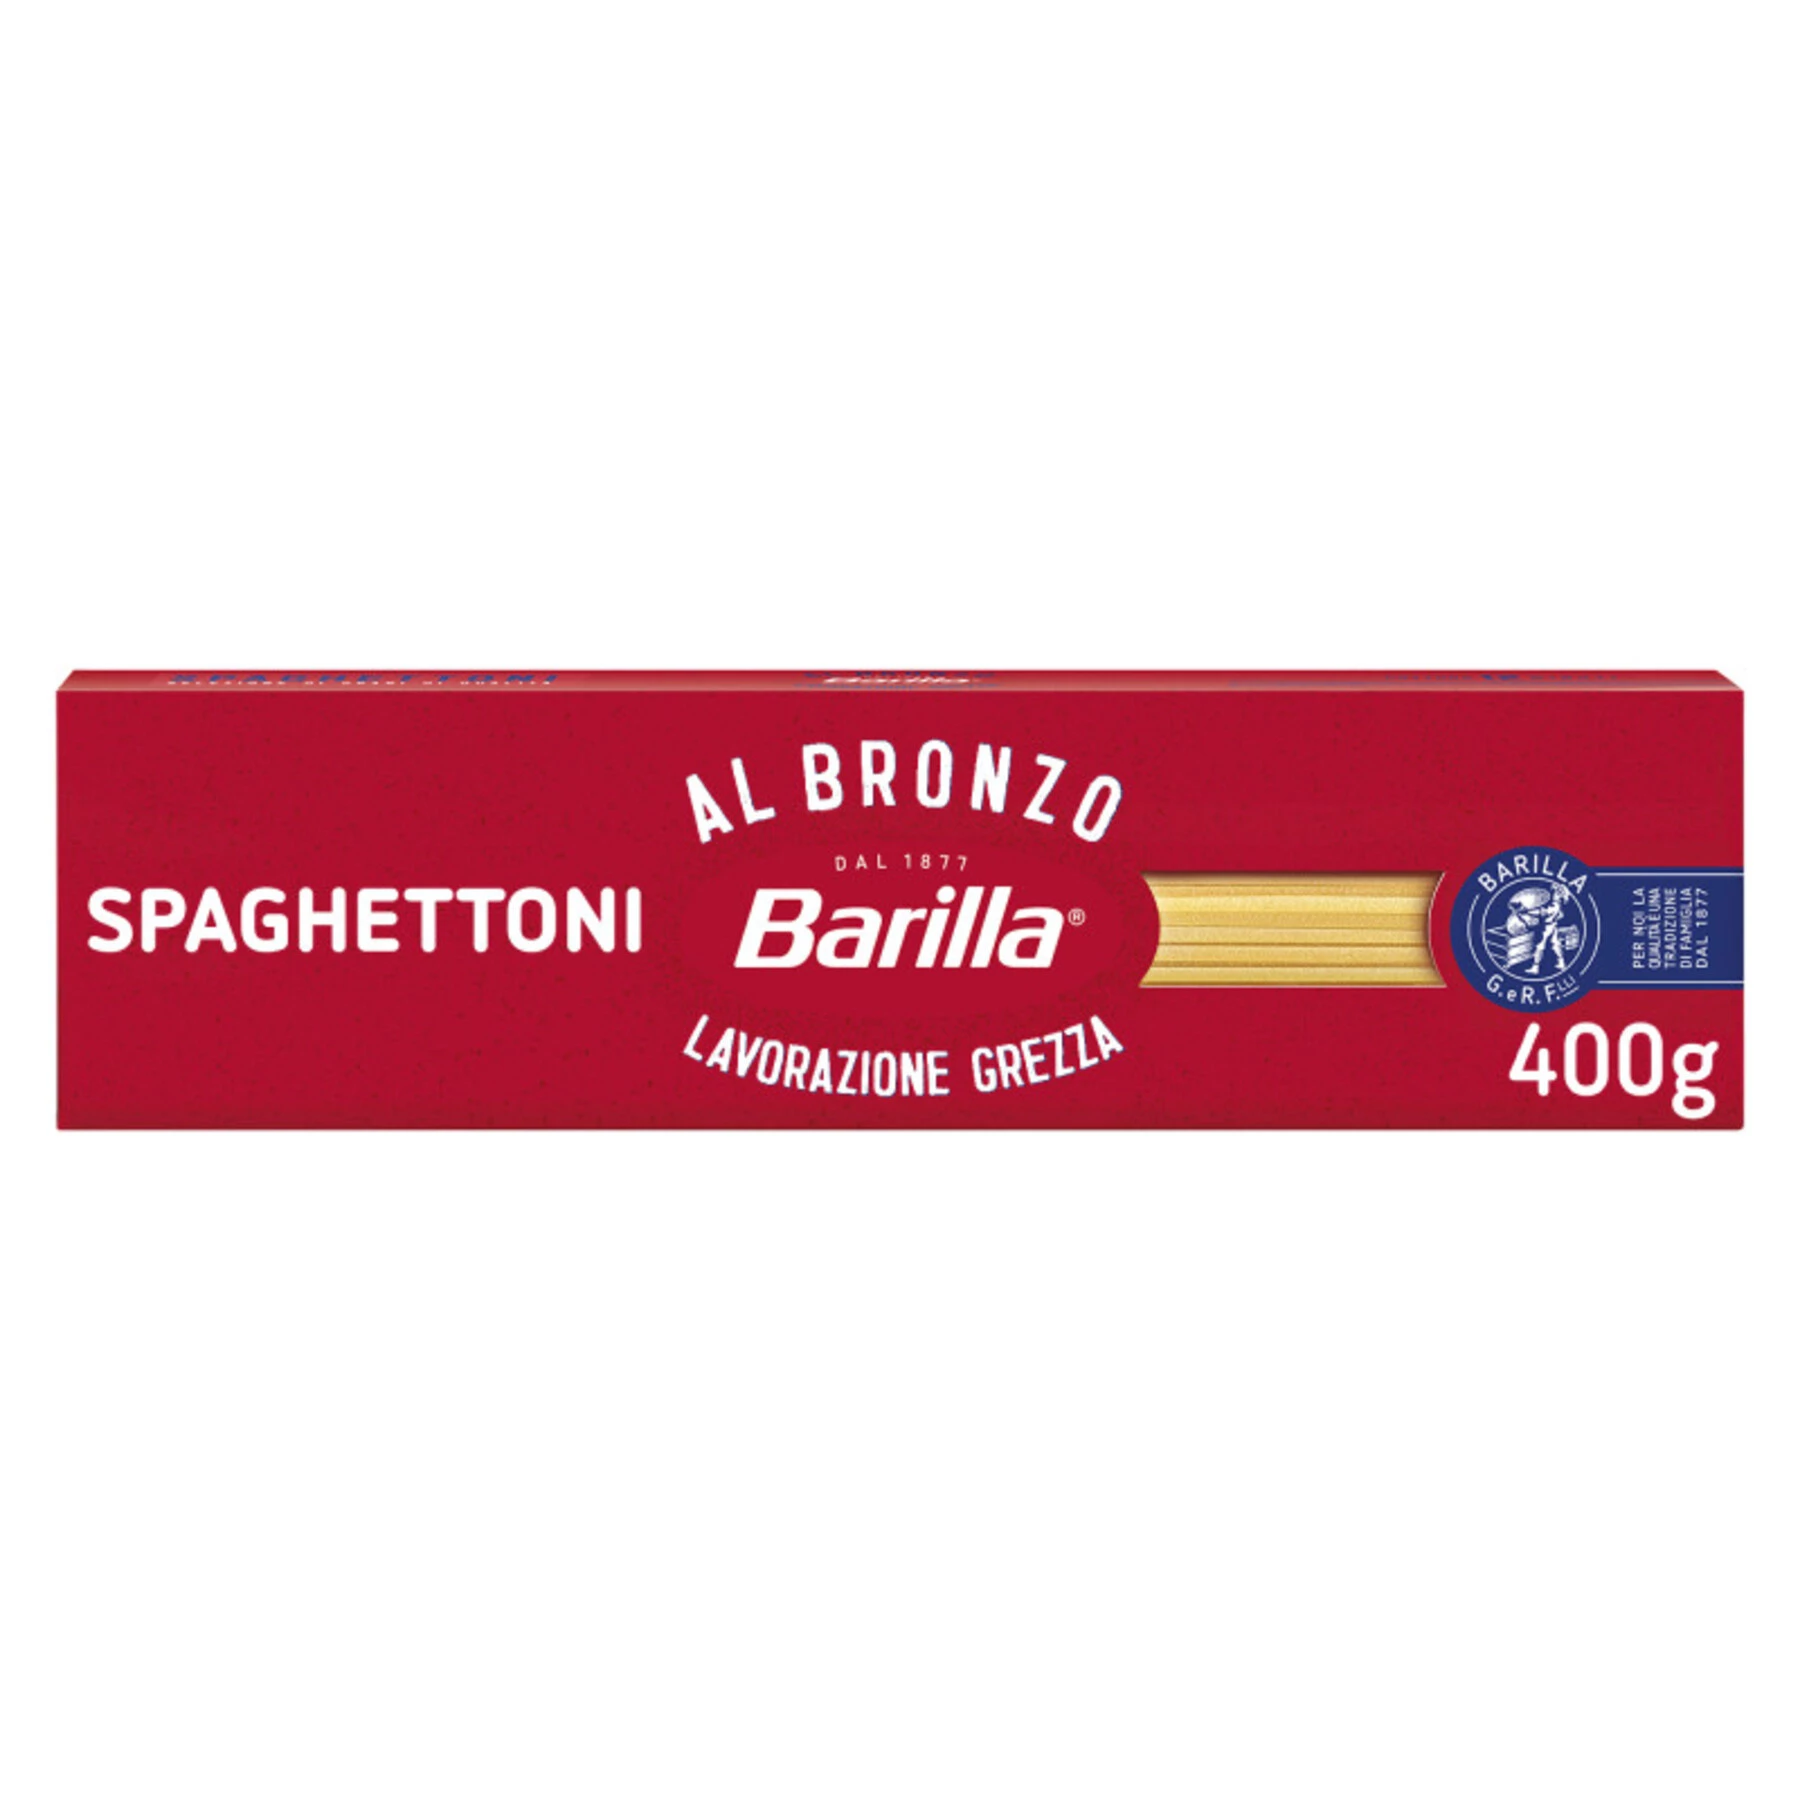 Pâte Spaghettoni Al Bronzo, 400g - BARILLA